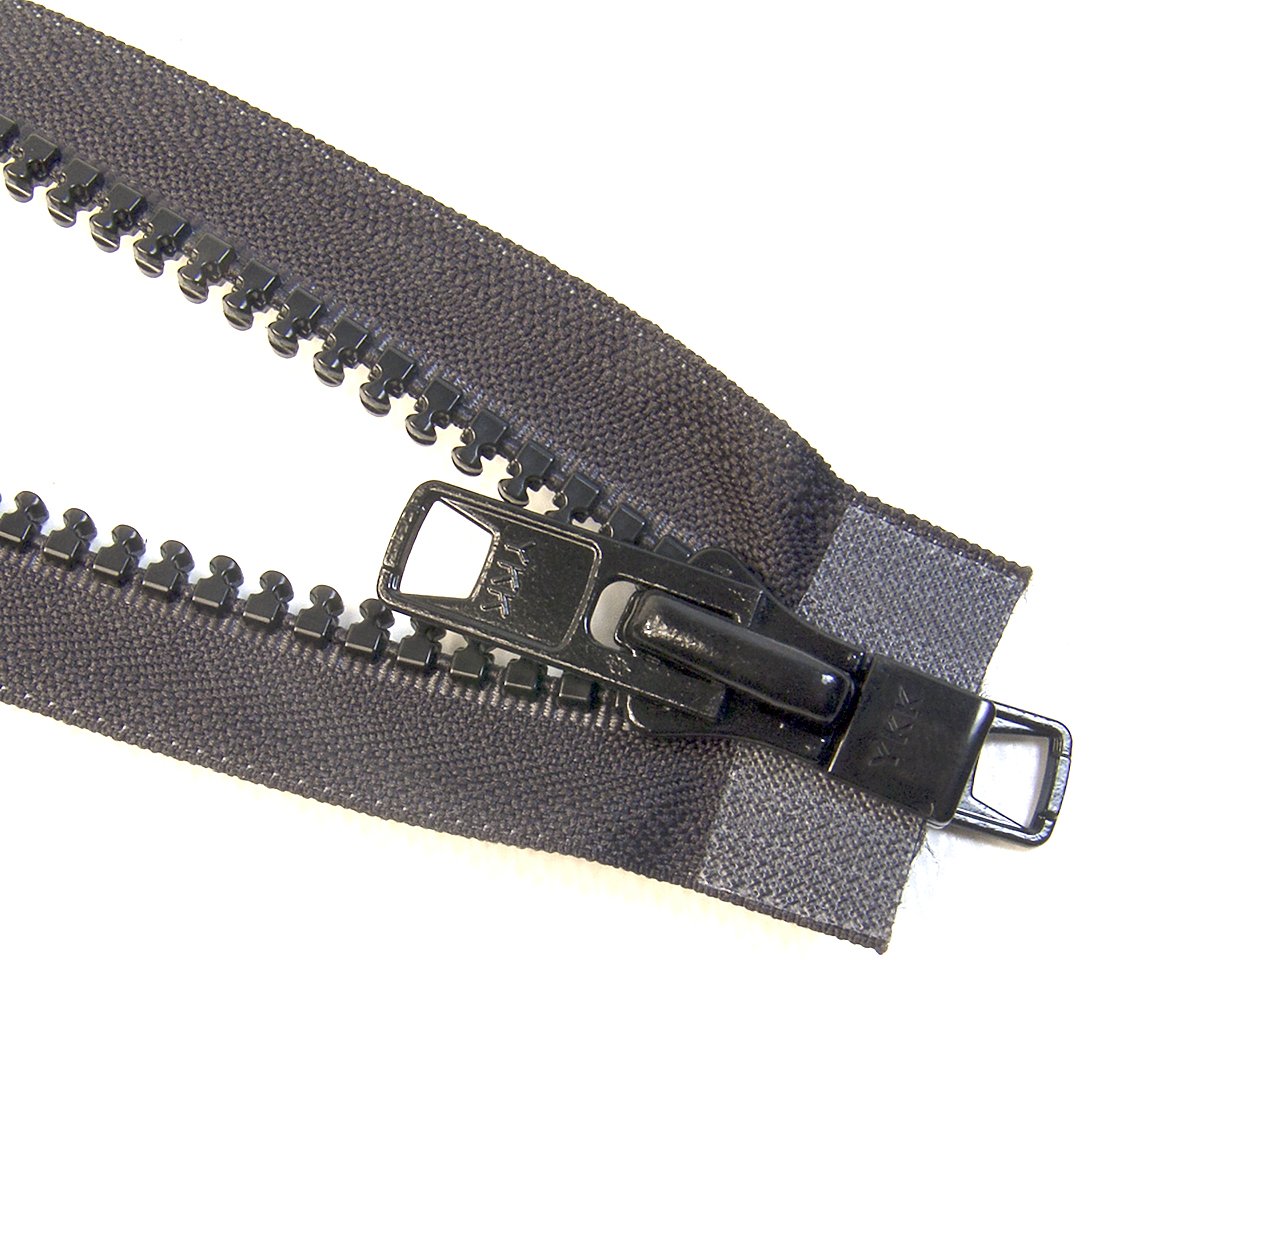 10 Brass Heavy Duty Two-Way Separating (Jacket) Zipper